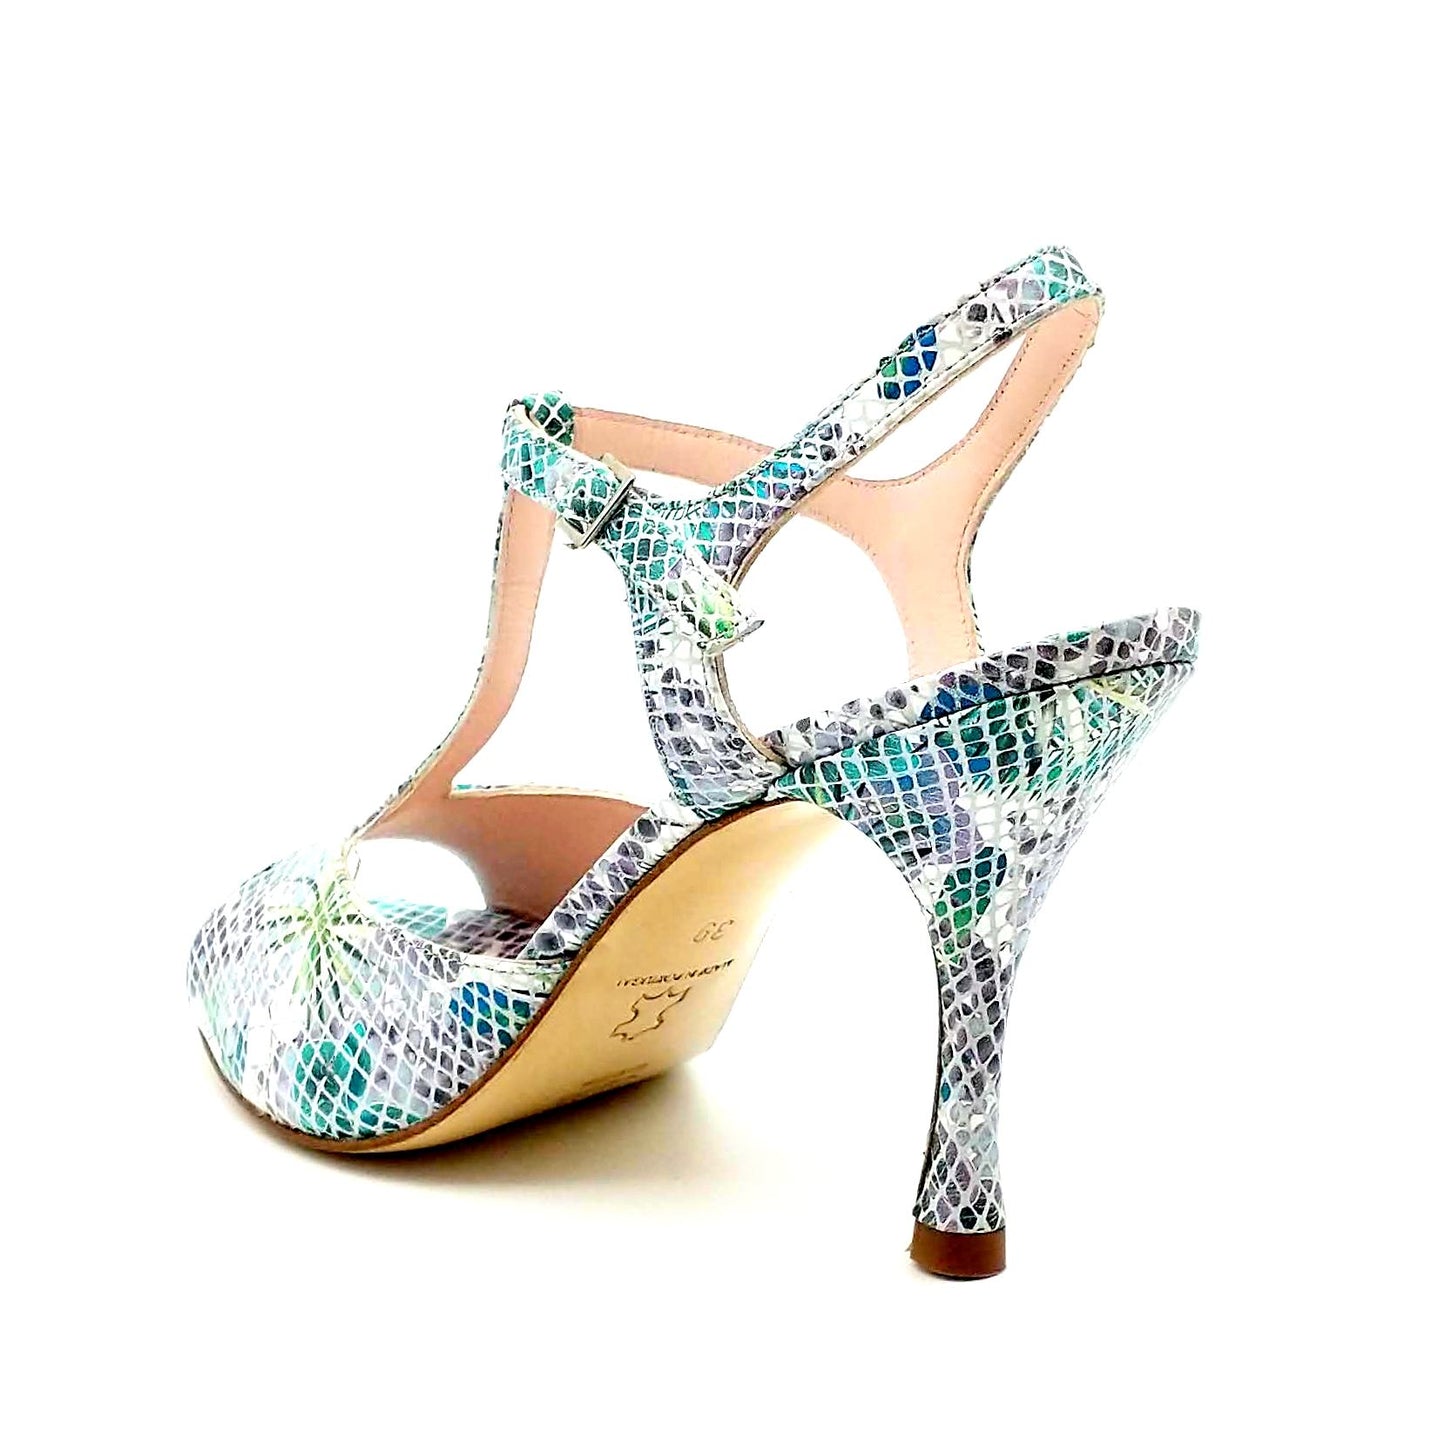 Sencillo blue tropic heels 8cm